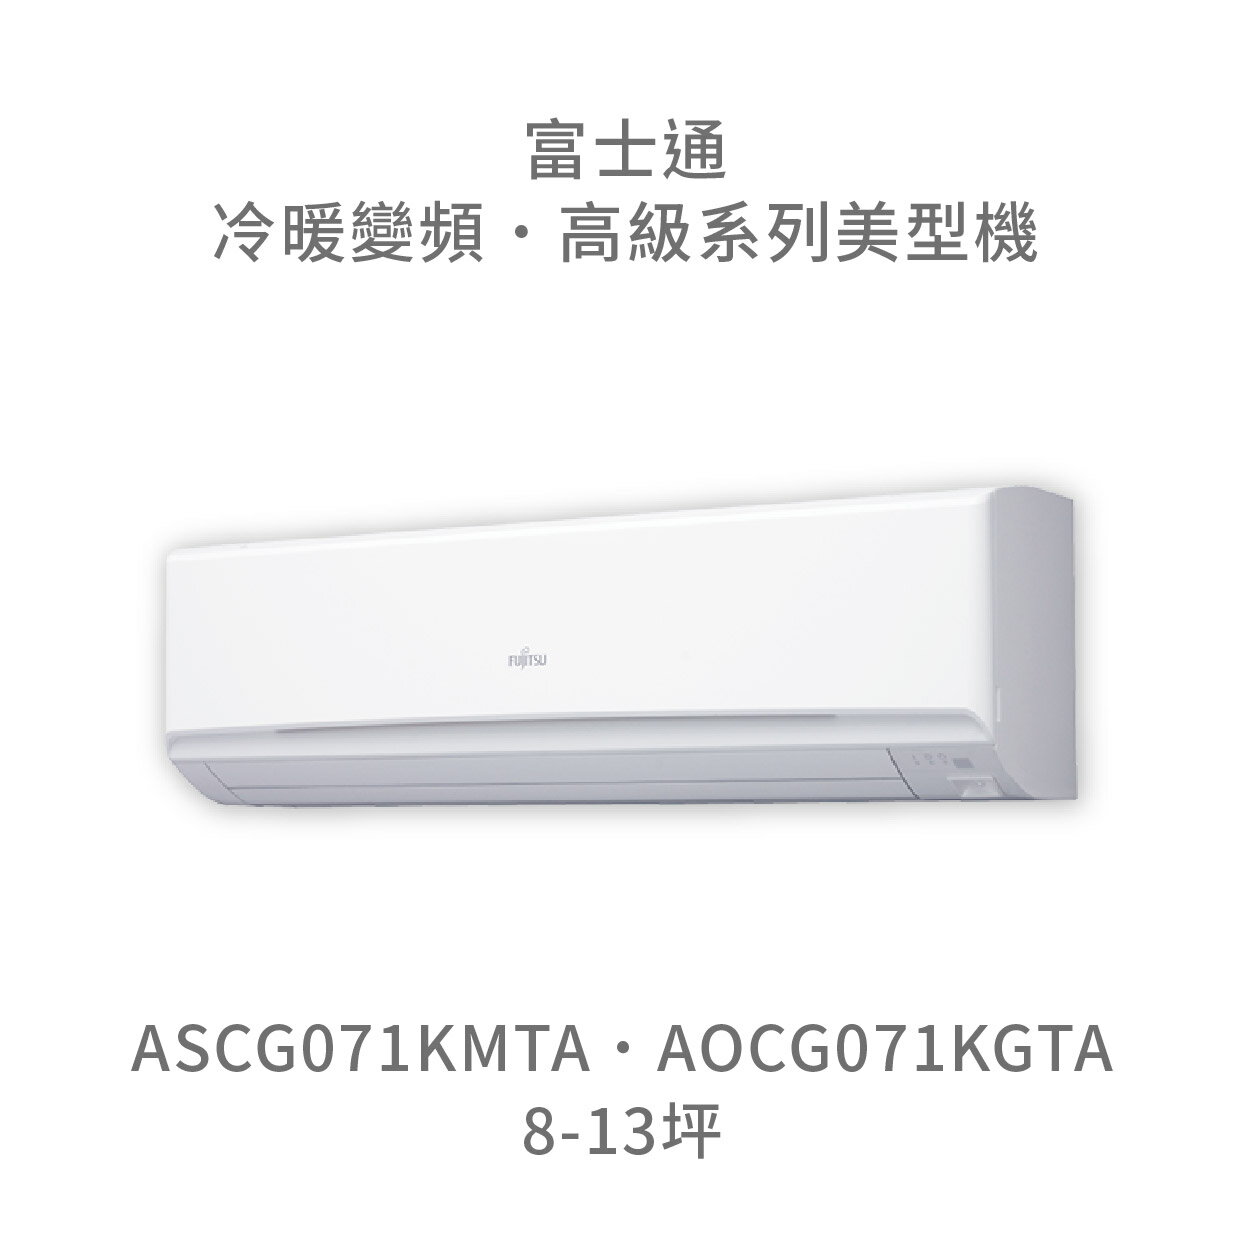 【點數10%回饋】【日本富士通】AOCG071KMTA/ASCG071KMTA 高級系列 冷暖 變頻冷氣 含標準安裝